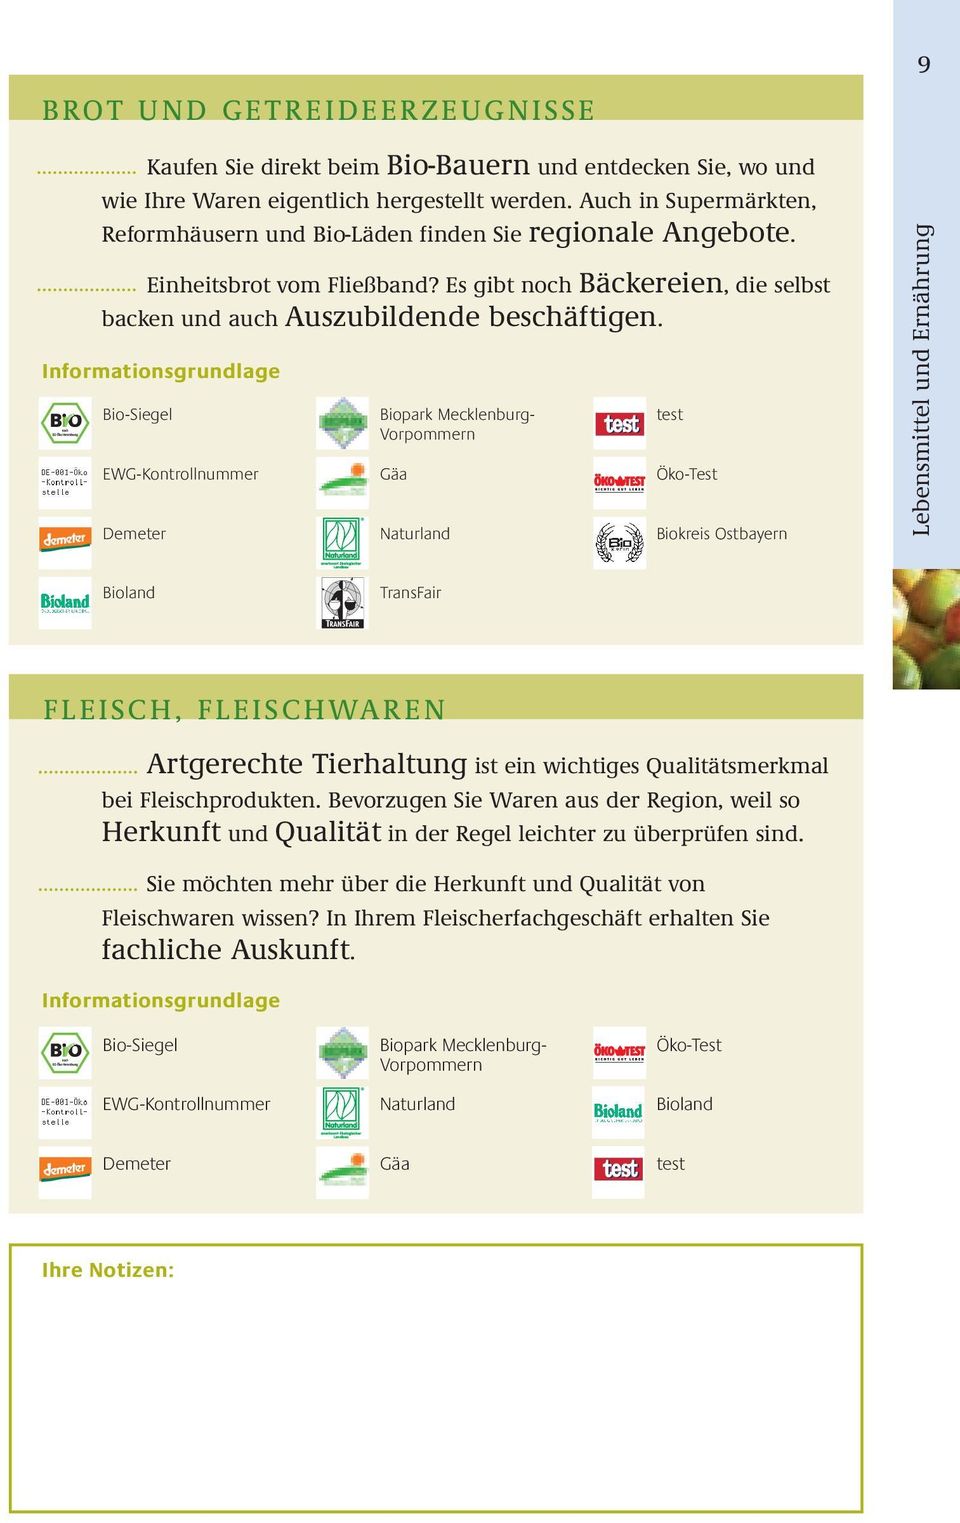 Biopark Mecklenburg- Vorpommern Gäa Naurland es Öko-Tes Biokreis Osbayern Lebensmiel und Ernährung Bioland TransFair FLEISCH, FLEISCHWAREN Argereche Tierhalung is ein wichiges Qualiäsmerkmal bei